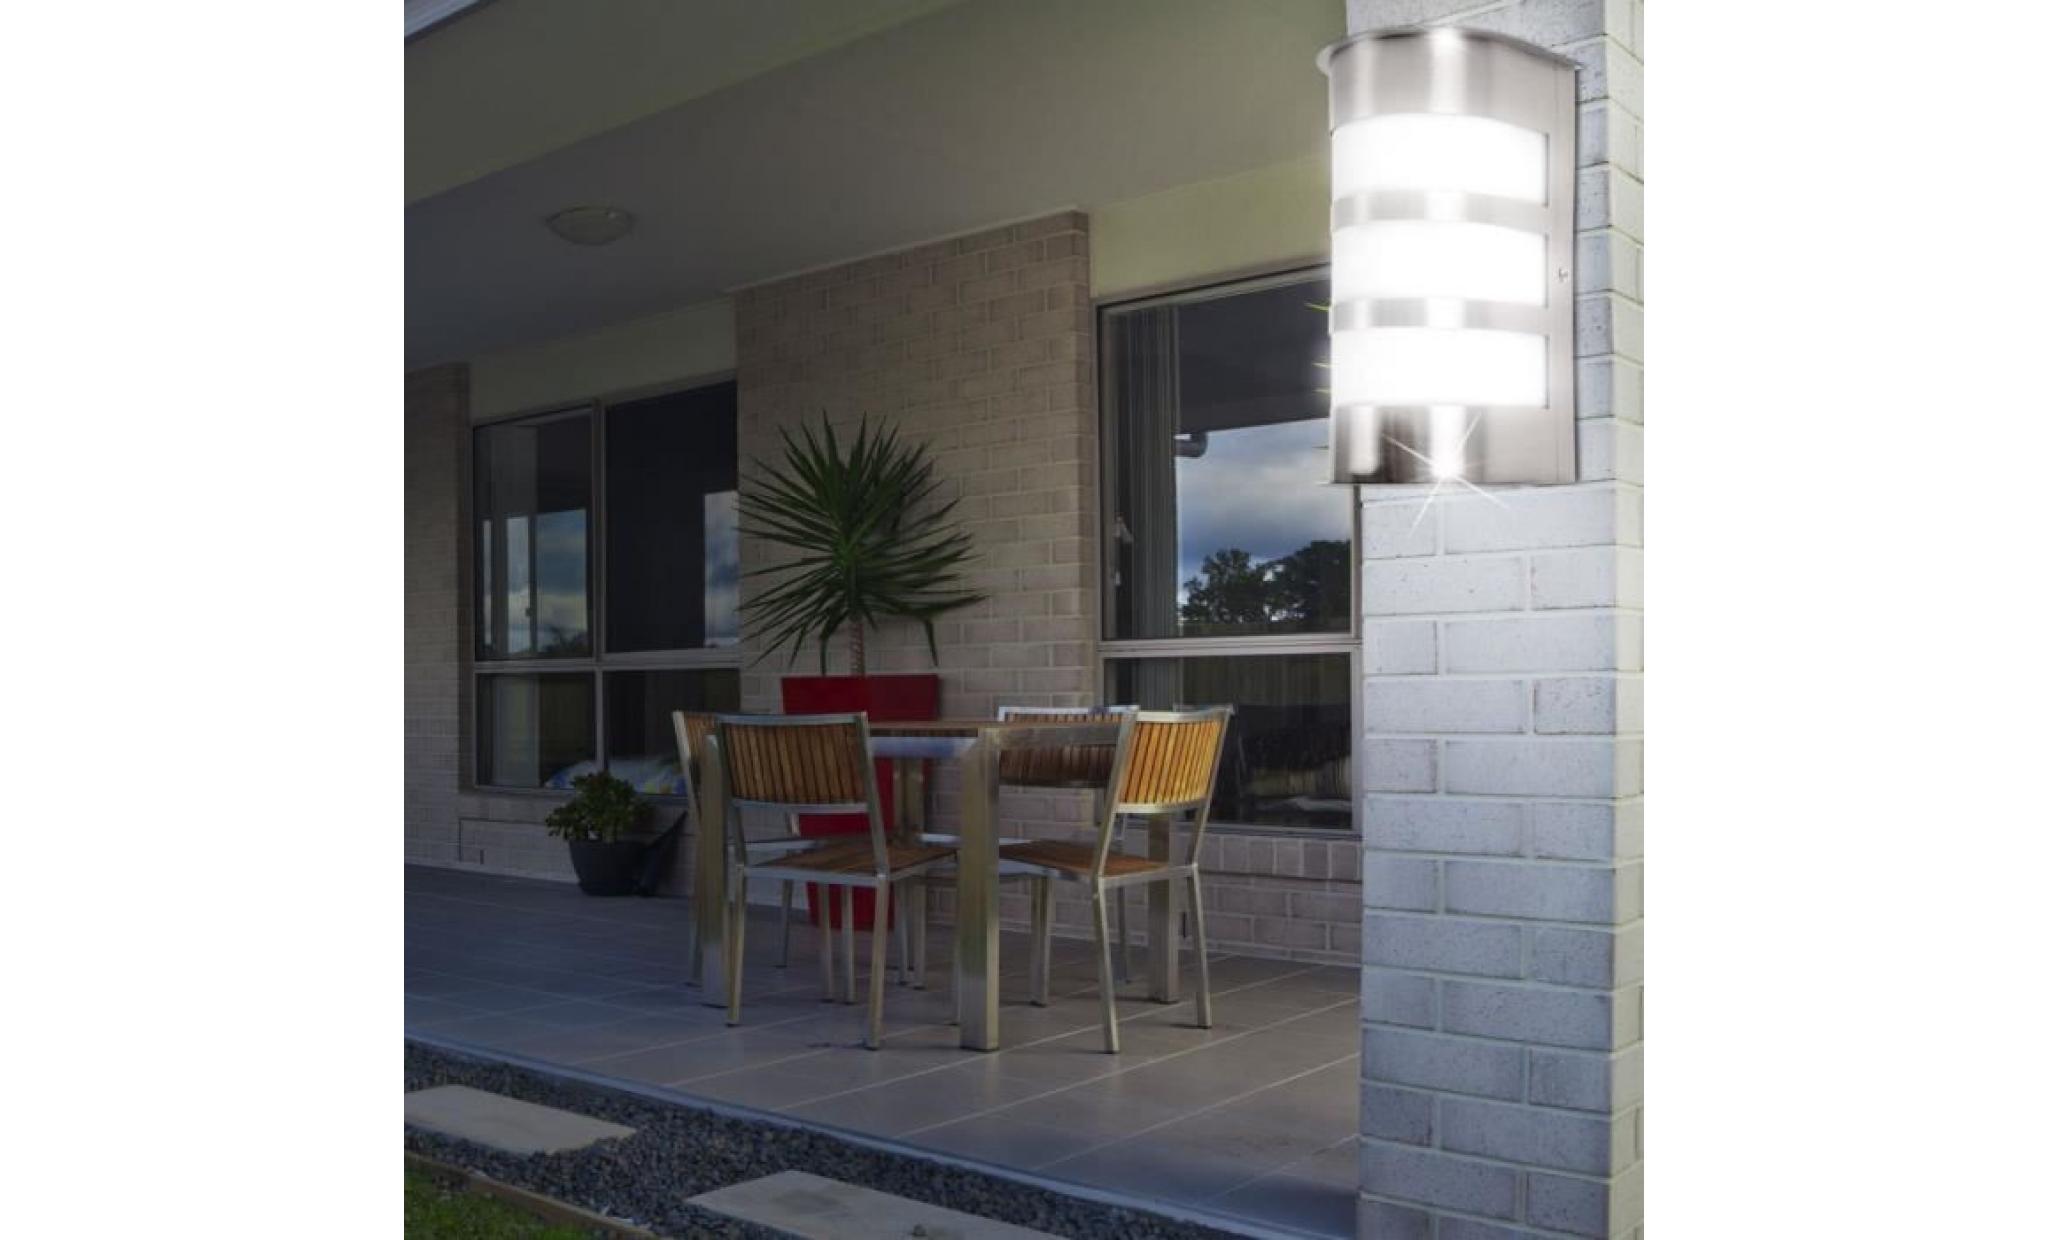 applique led rvb 7 watts luminaire mural éclairage espace extérieur façade ip44 terrasse balcon pas cher